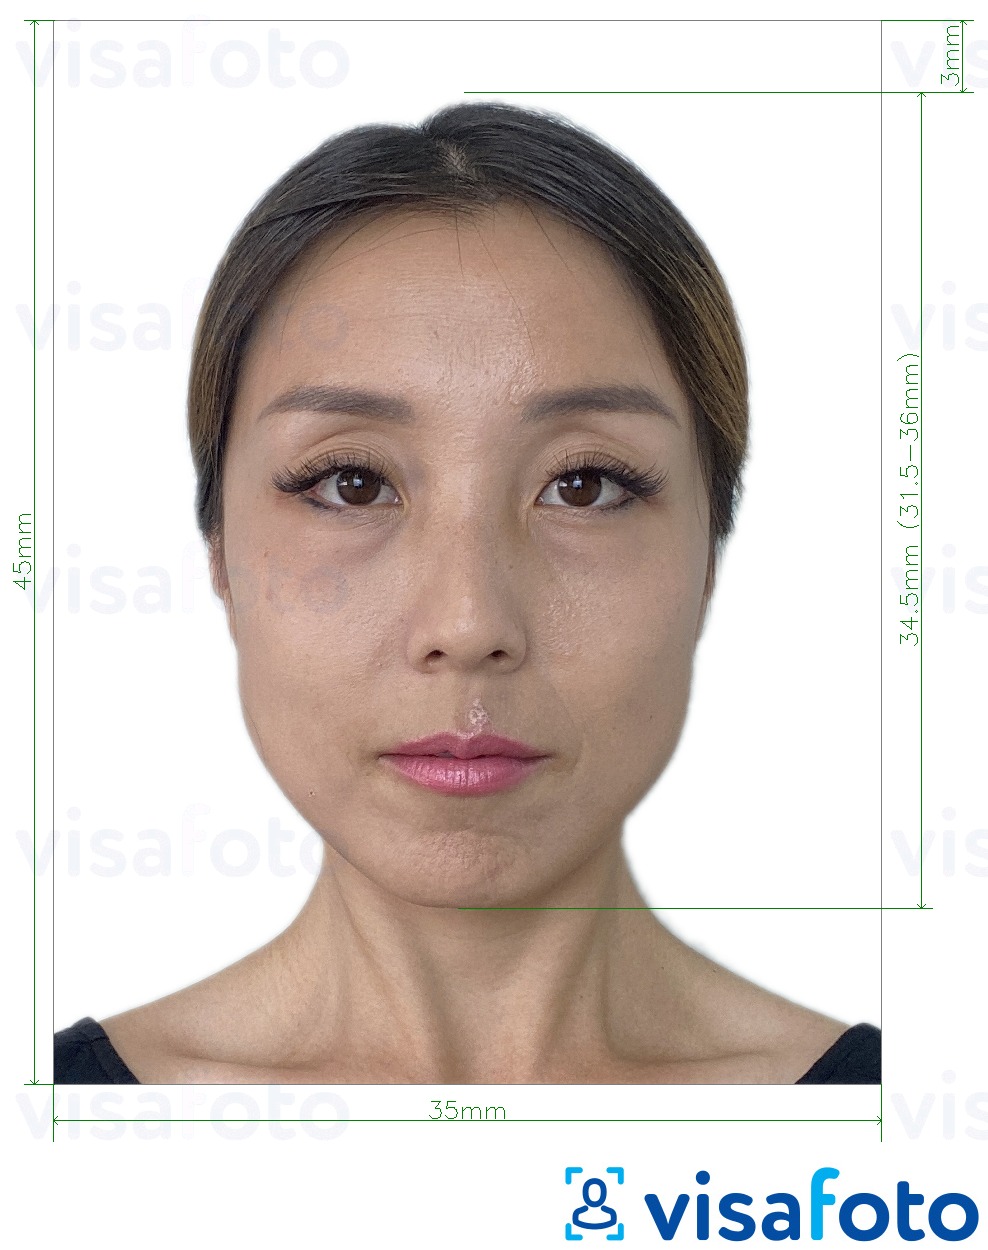 Exemple de foto per a Taiwan Visa 35x45 mm (3.5x4.5 cm) amb la mida exacta especificada